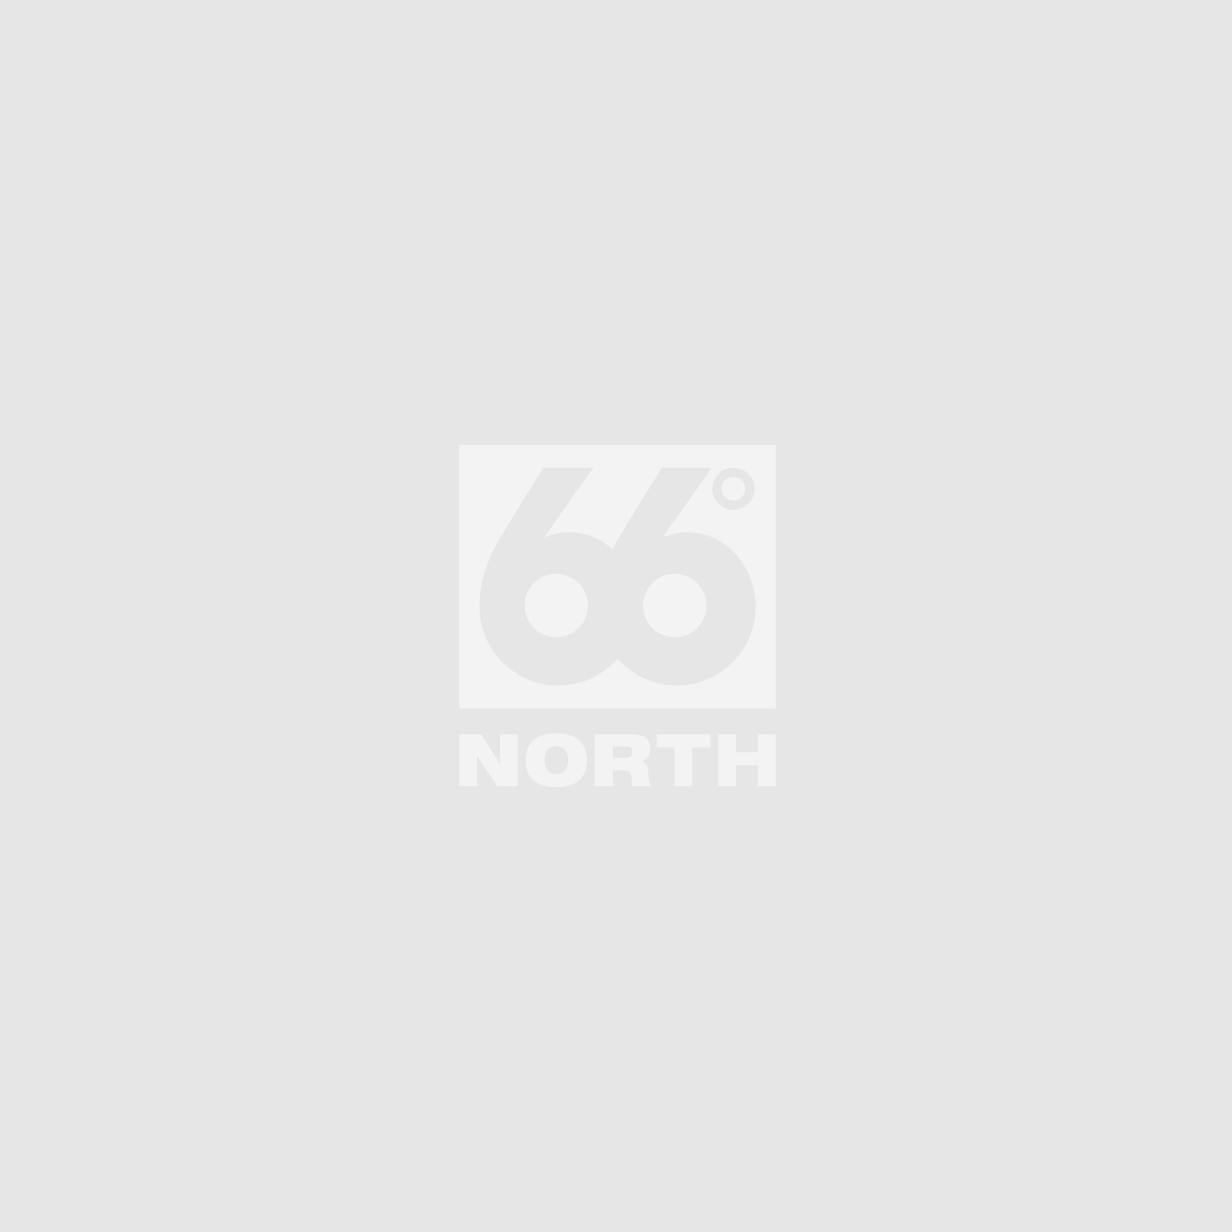 66 North Women's Tindur Tops & Vests